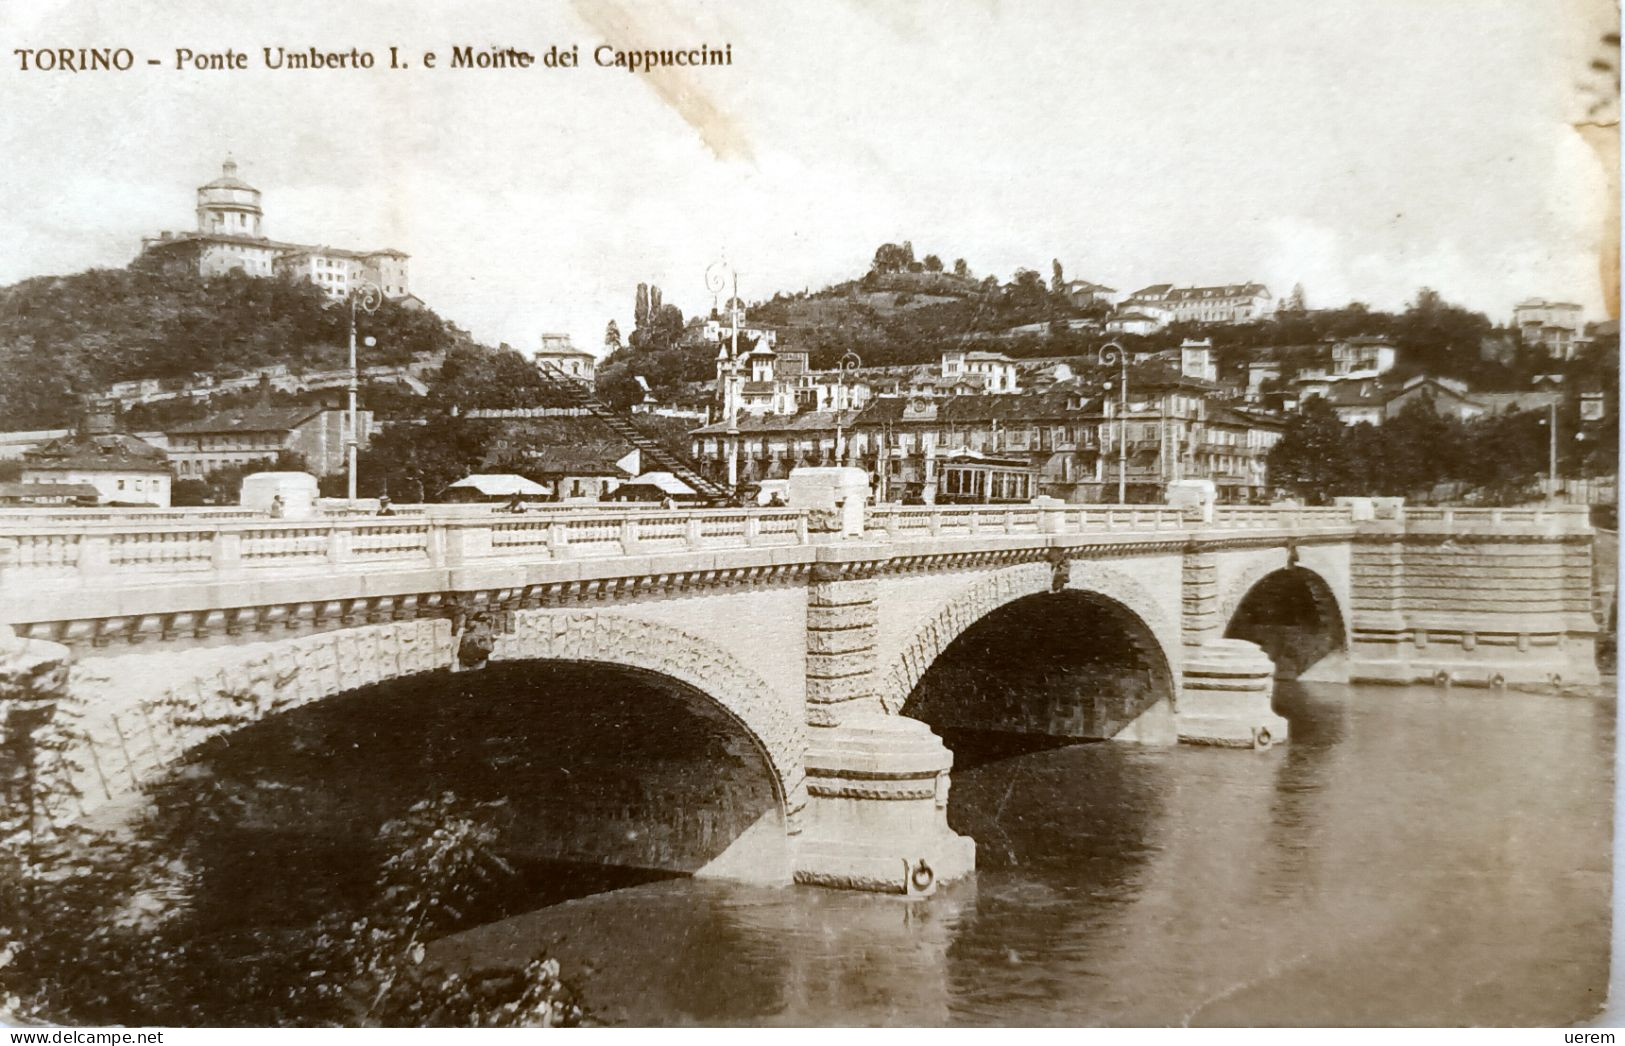 PIEMONTE TORINO 1 PONTE UMBERTO I E MONTE DEI CAPPUCCINI 1 Formato Piccolo Viaggiata Nel 1912 Condizioni Buone - Pontes